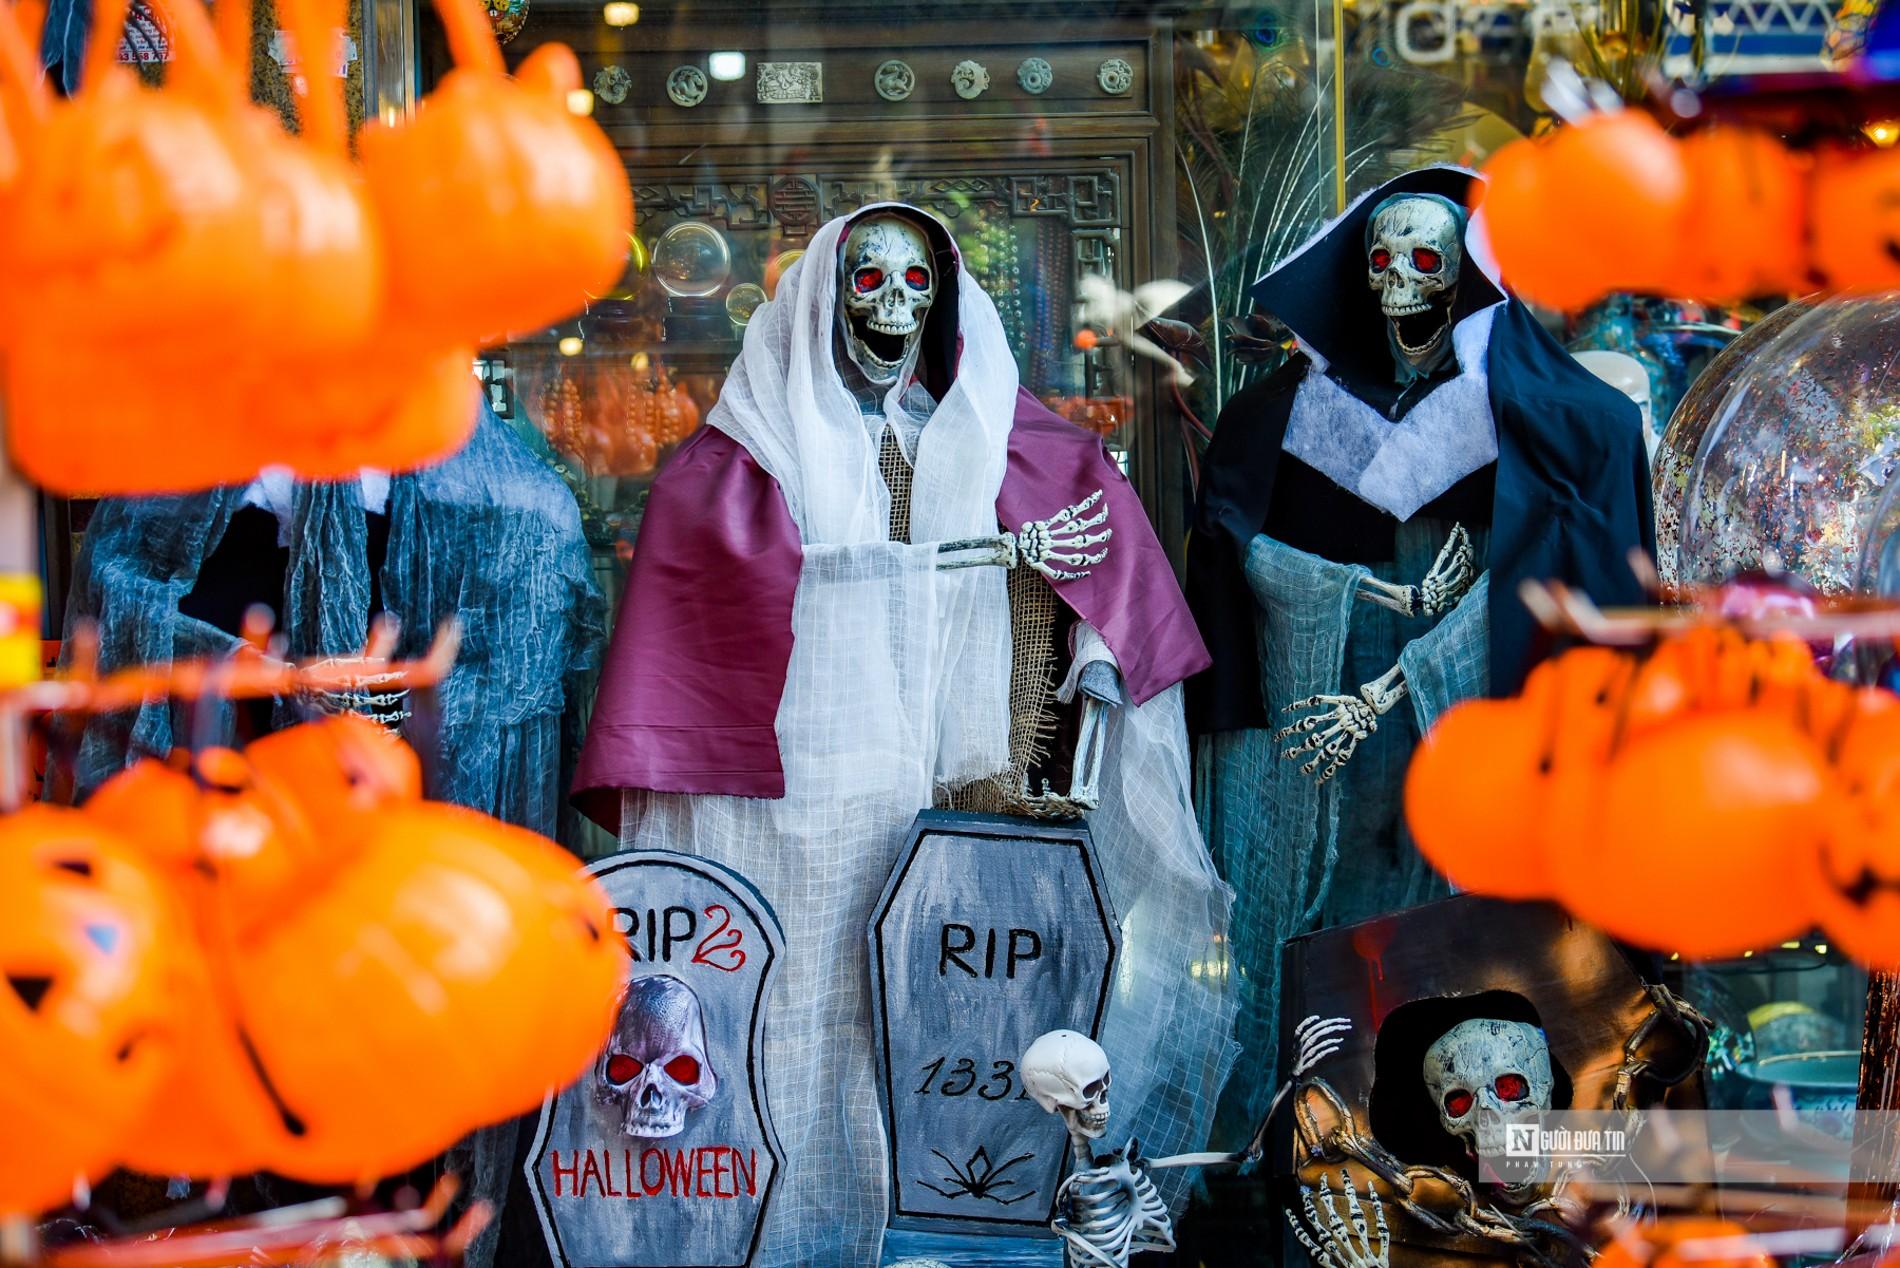 Tiêu dùng & Dư luận - Chủ nghĩa tiêu dùng nhìn từ lễ hội Halloween ngốn tiền giới trẻ (Hình 3).